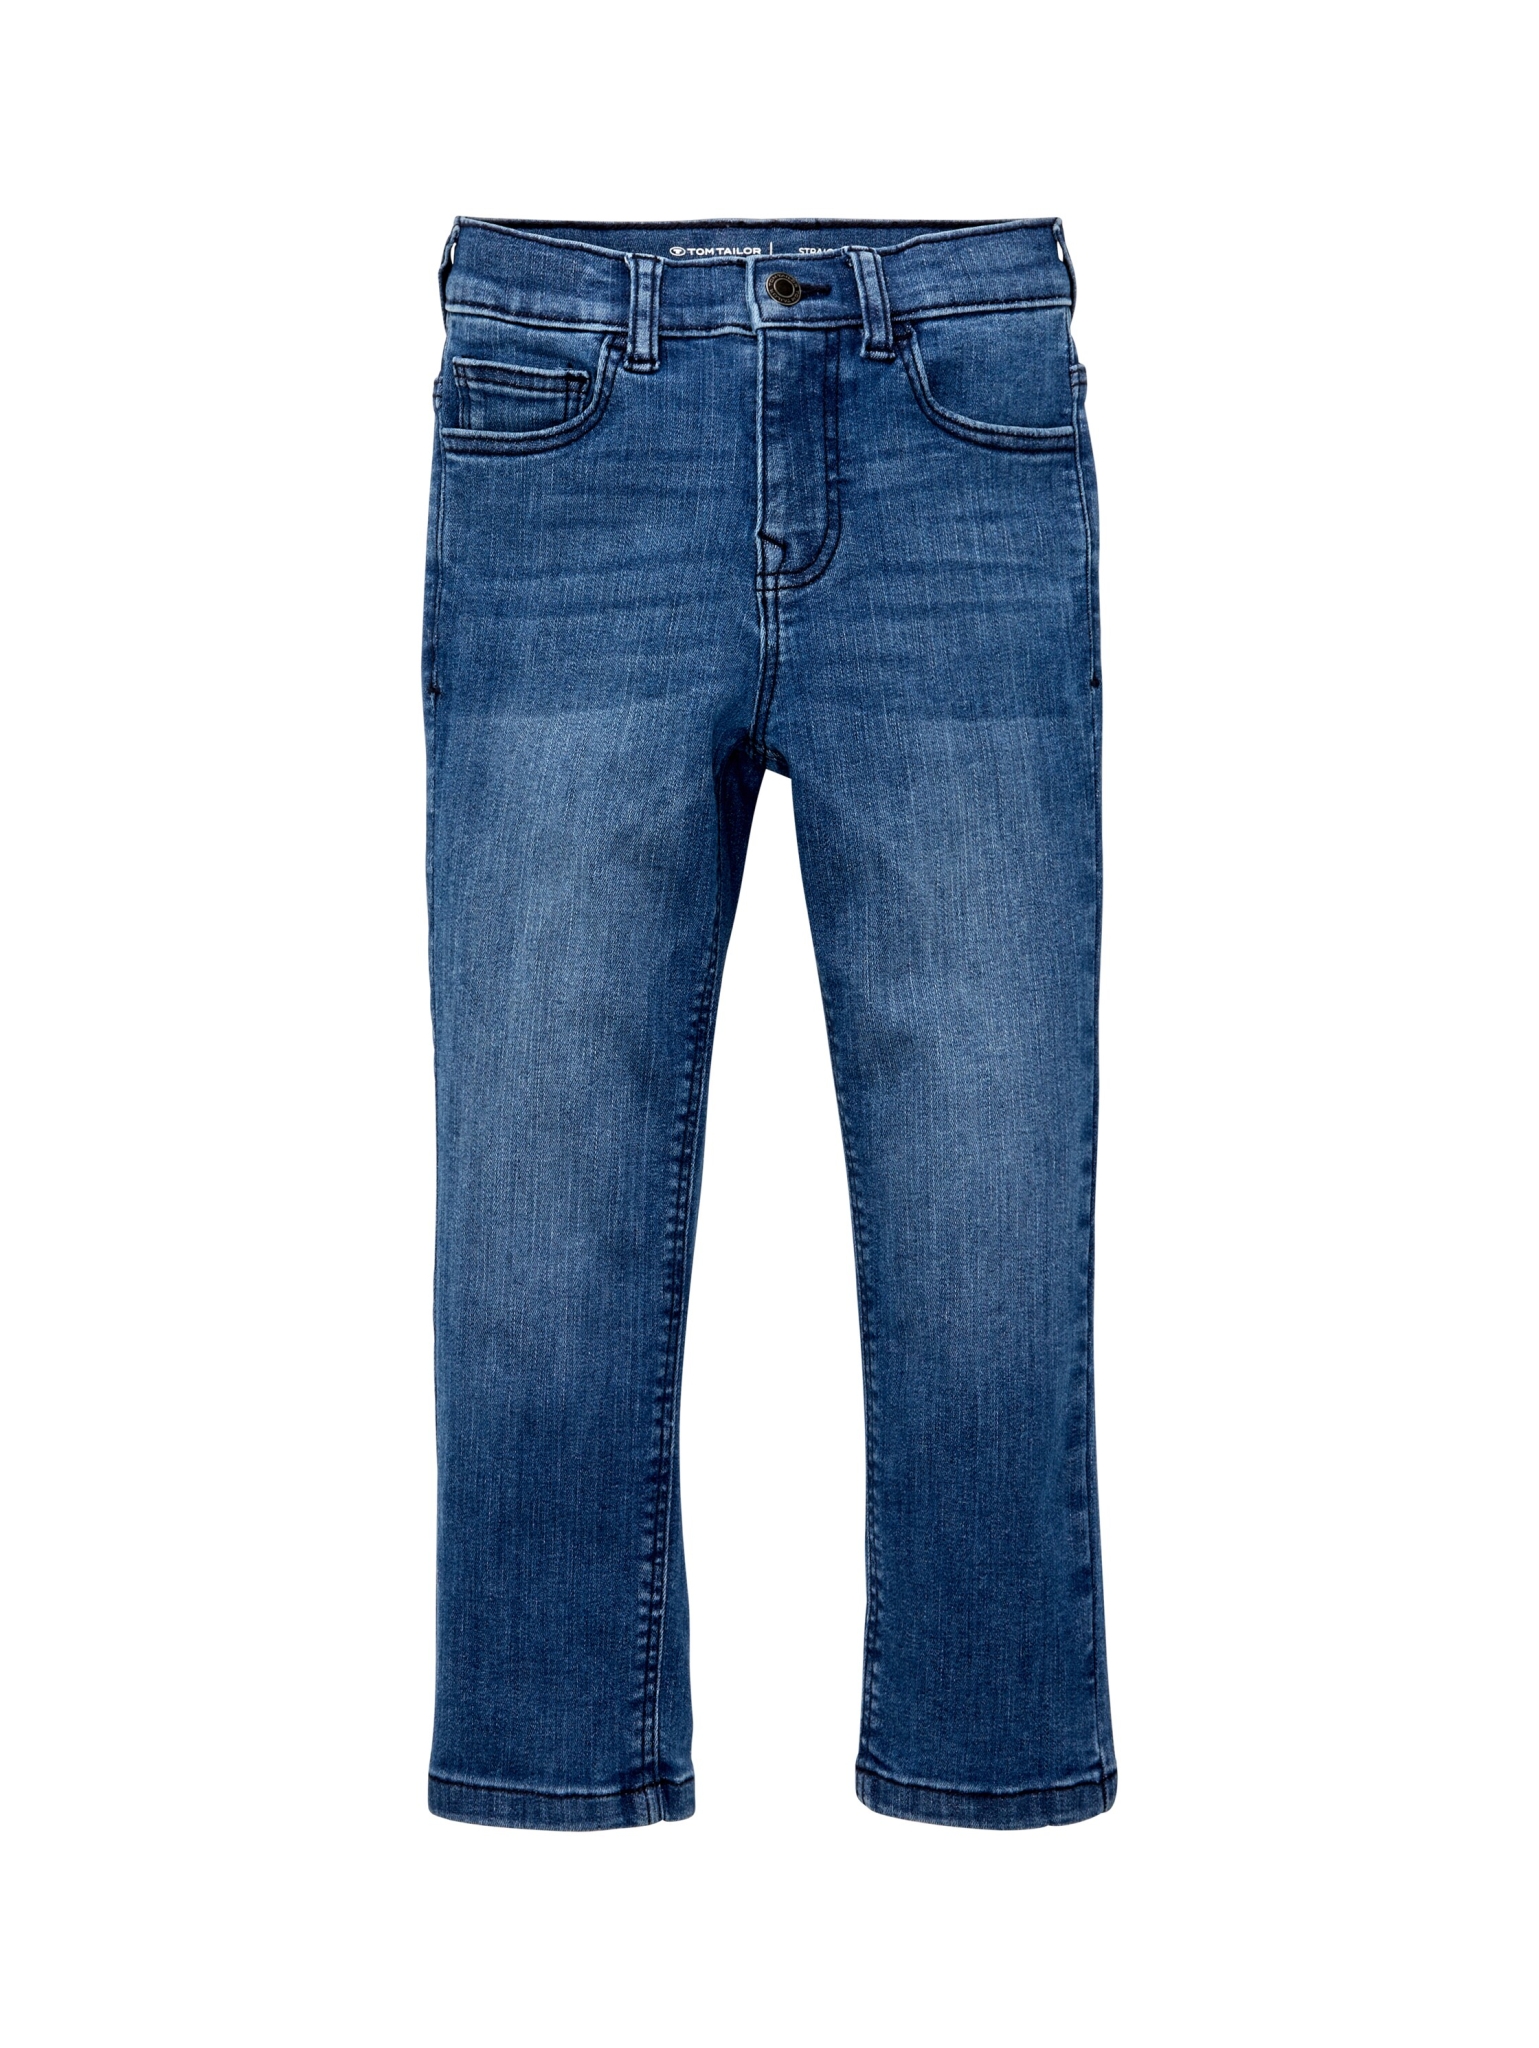 TOM TAILOR DENIM Straight Jeans 10733148 kaufen | WÖHRL